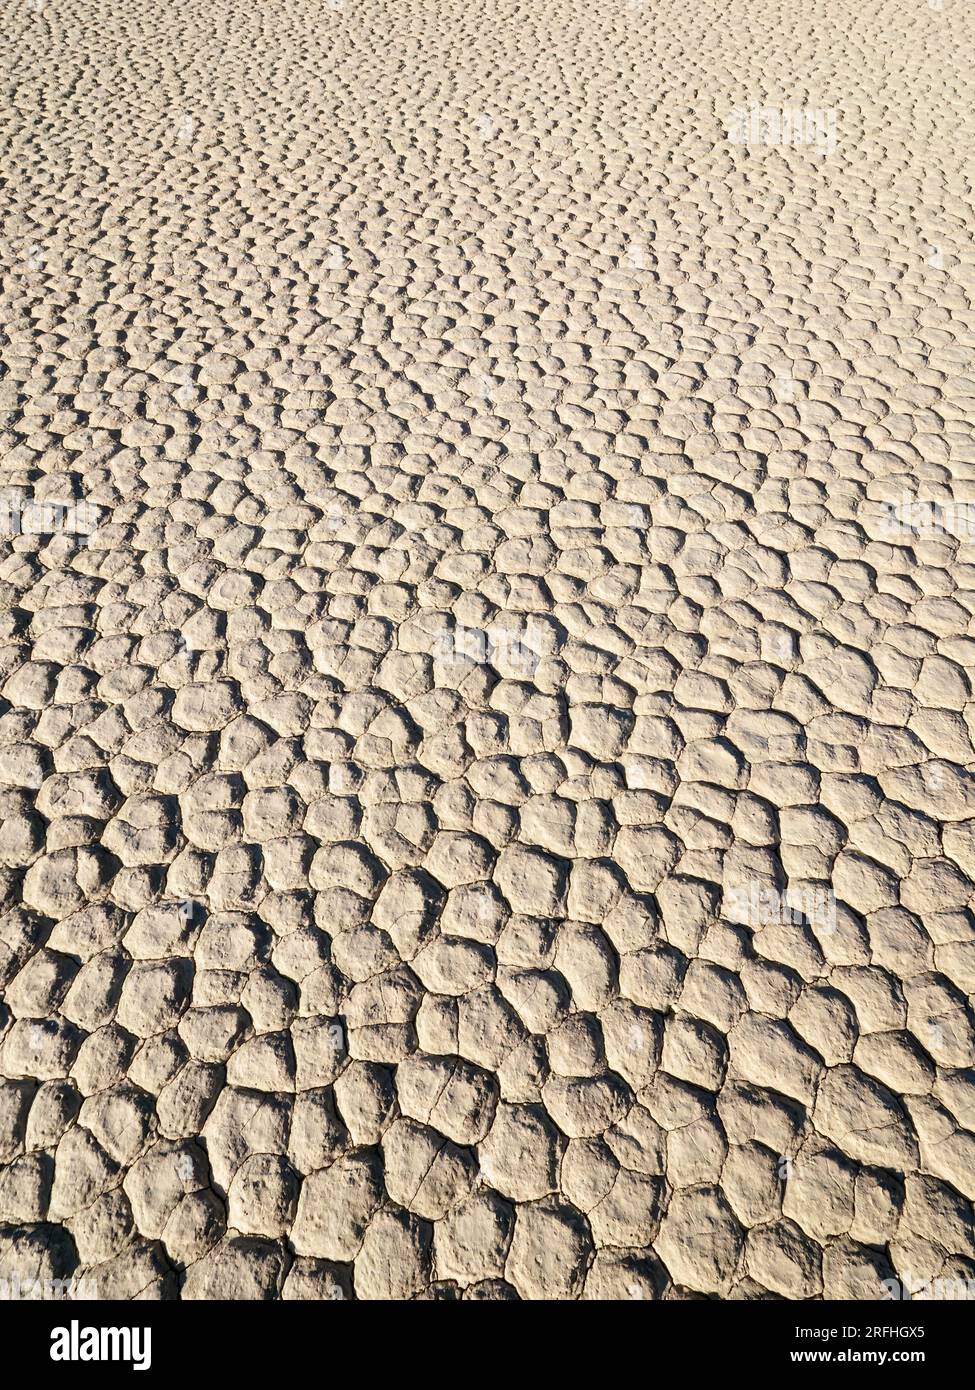 Die Rennstrecke, ein playa oder ein ausgetrockneter See im Death Valley-Nationalpark, Kalifornien, USA. Stockfoto